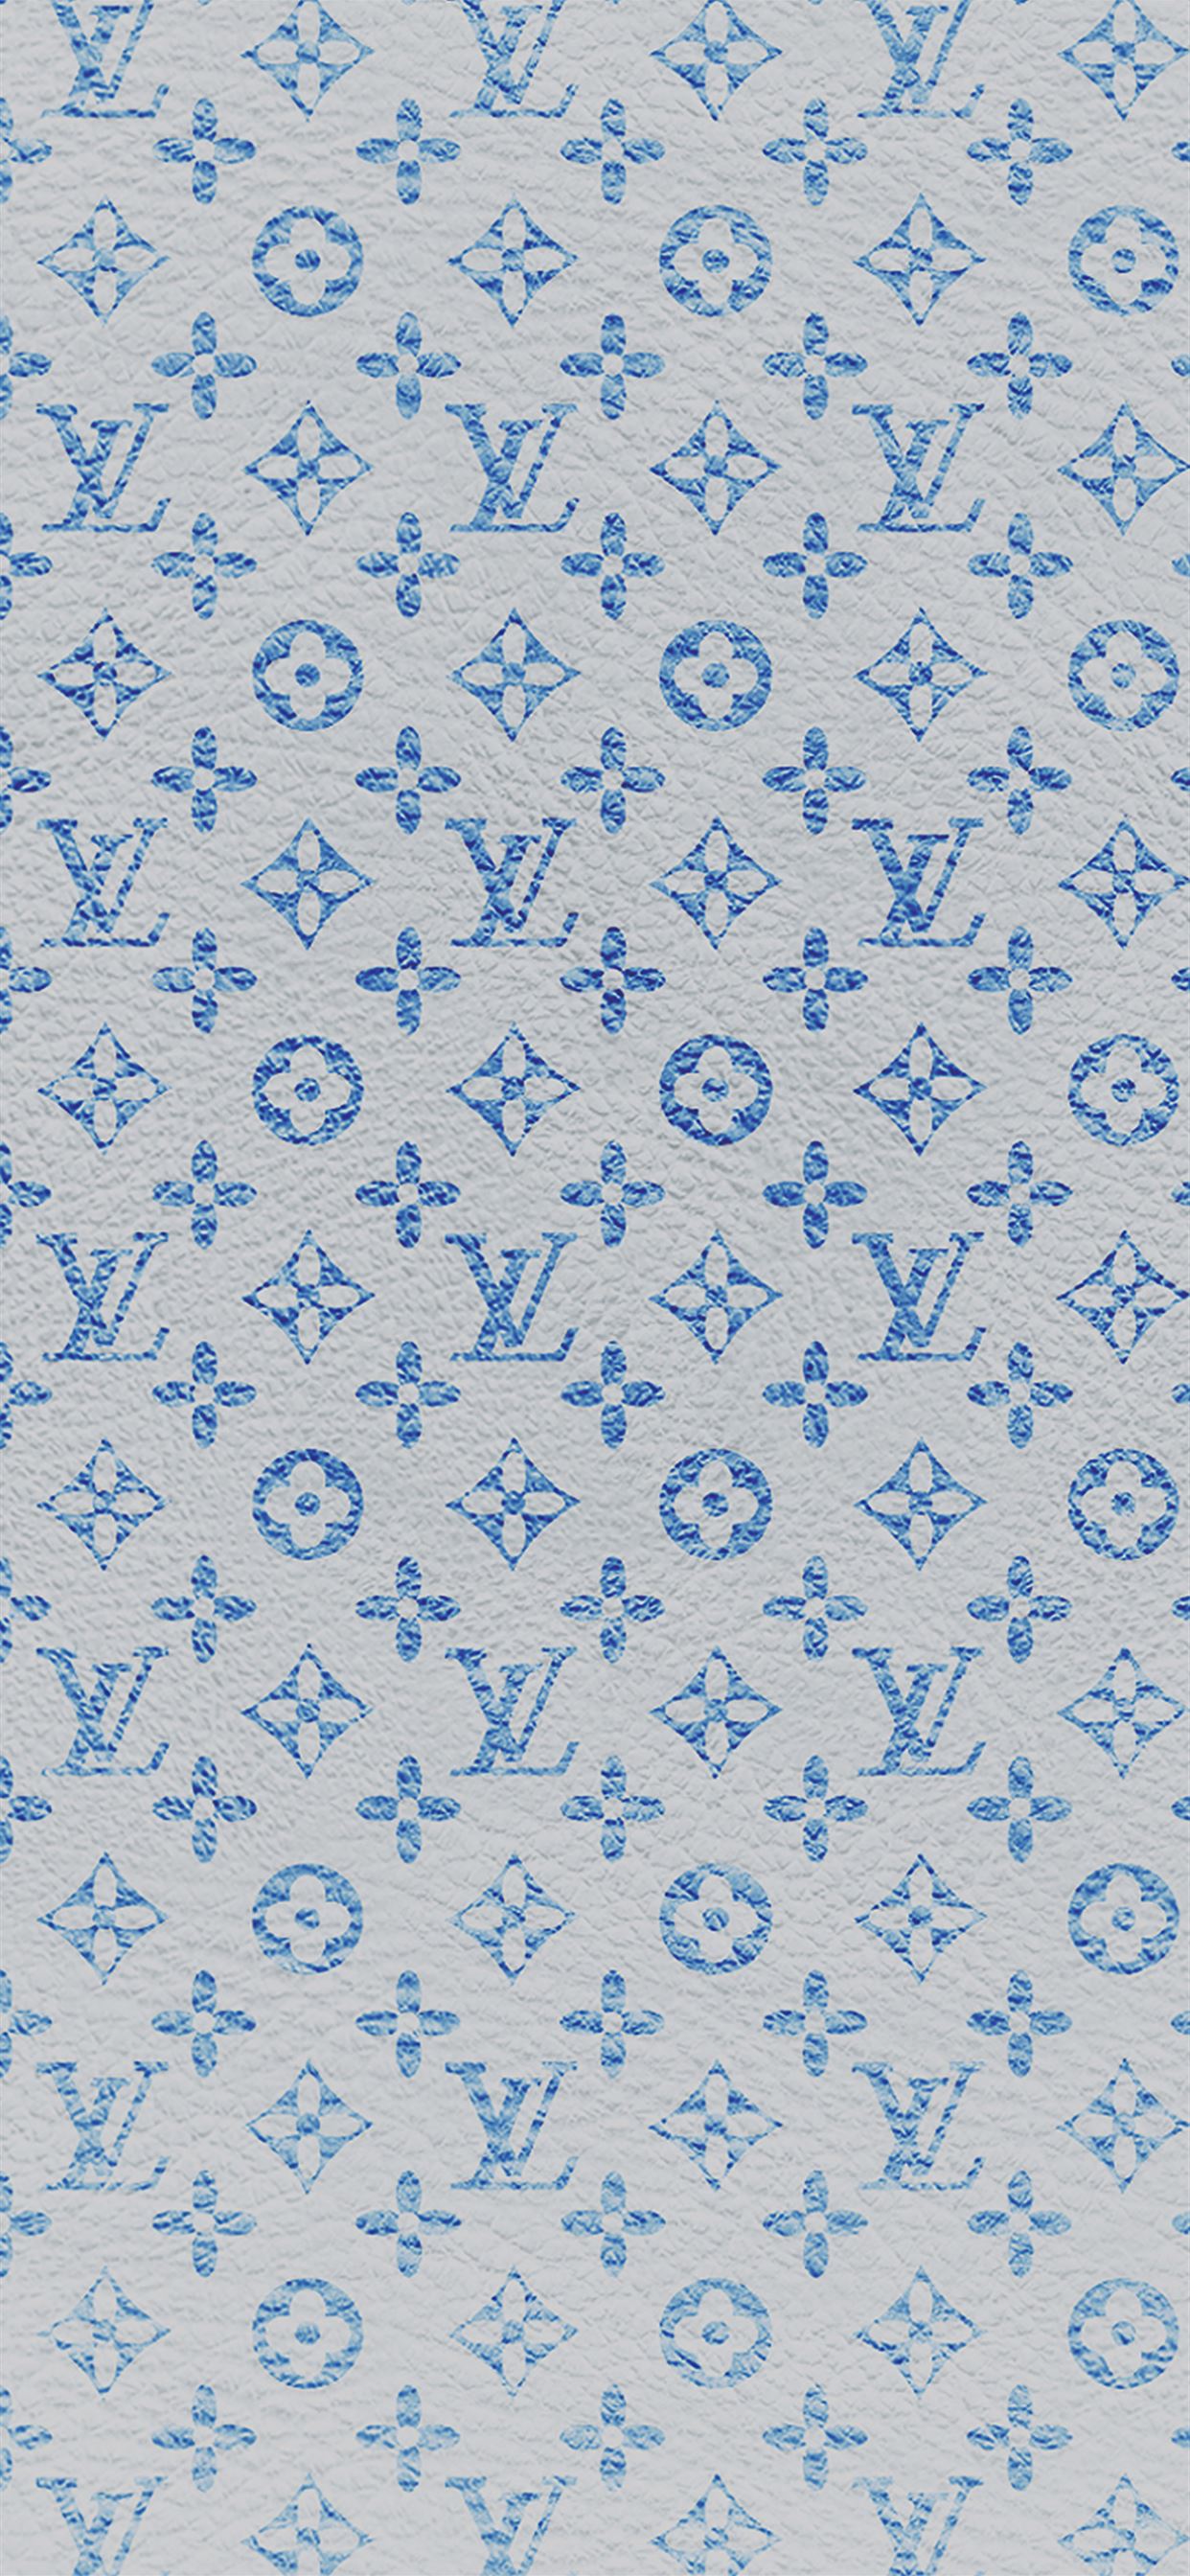 Louis Vuitton Print Wallpapers - Top Free Louis Vuitton Print